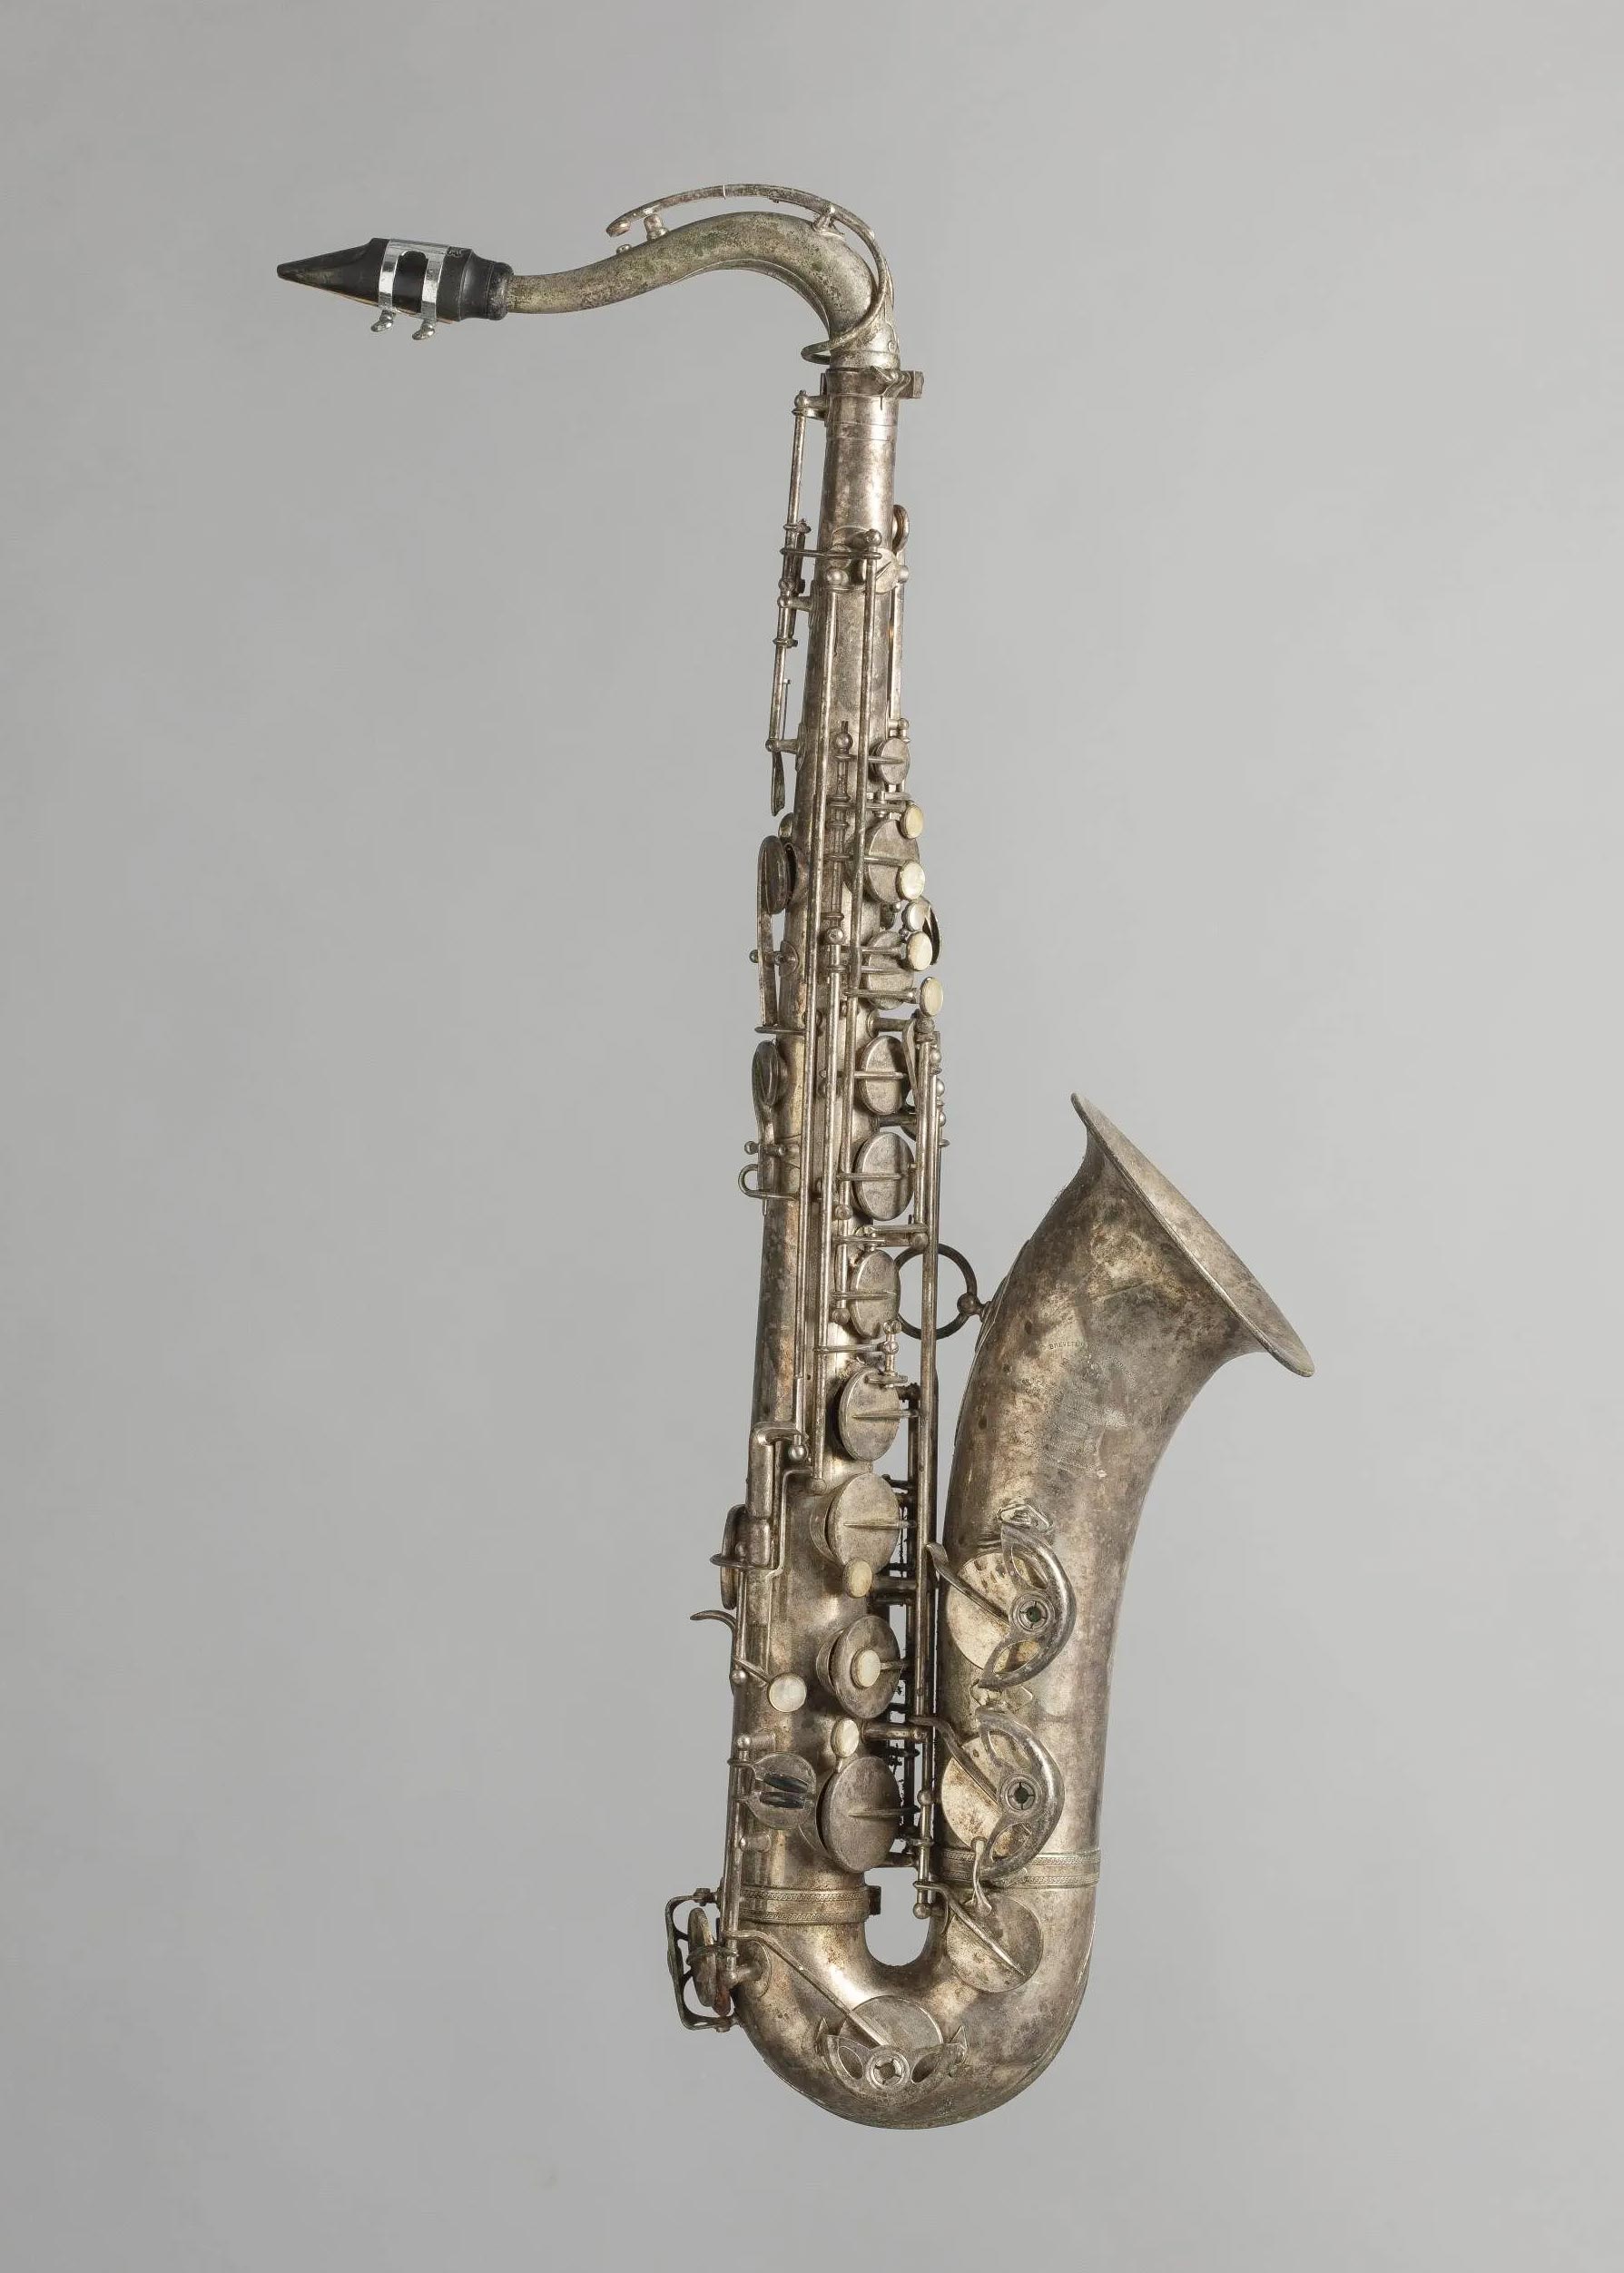 Saxophone ténor si bémol, en métal argenté de marque SELMER modèle Balanced Action de 1947 Instrument mis en vente par Vichy Enchères le 27 juin 2020 © C. Darbelet